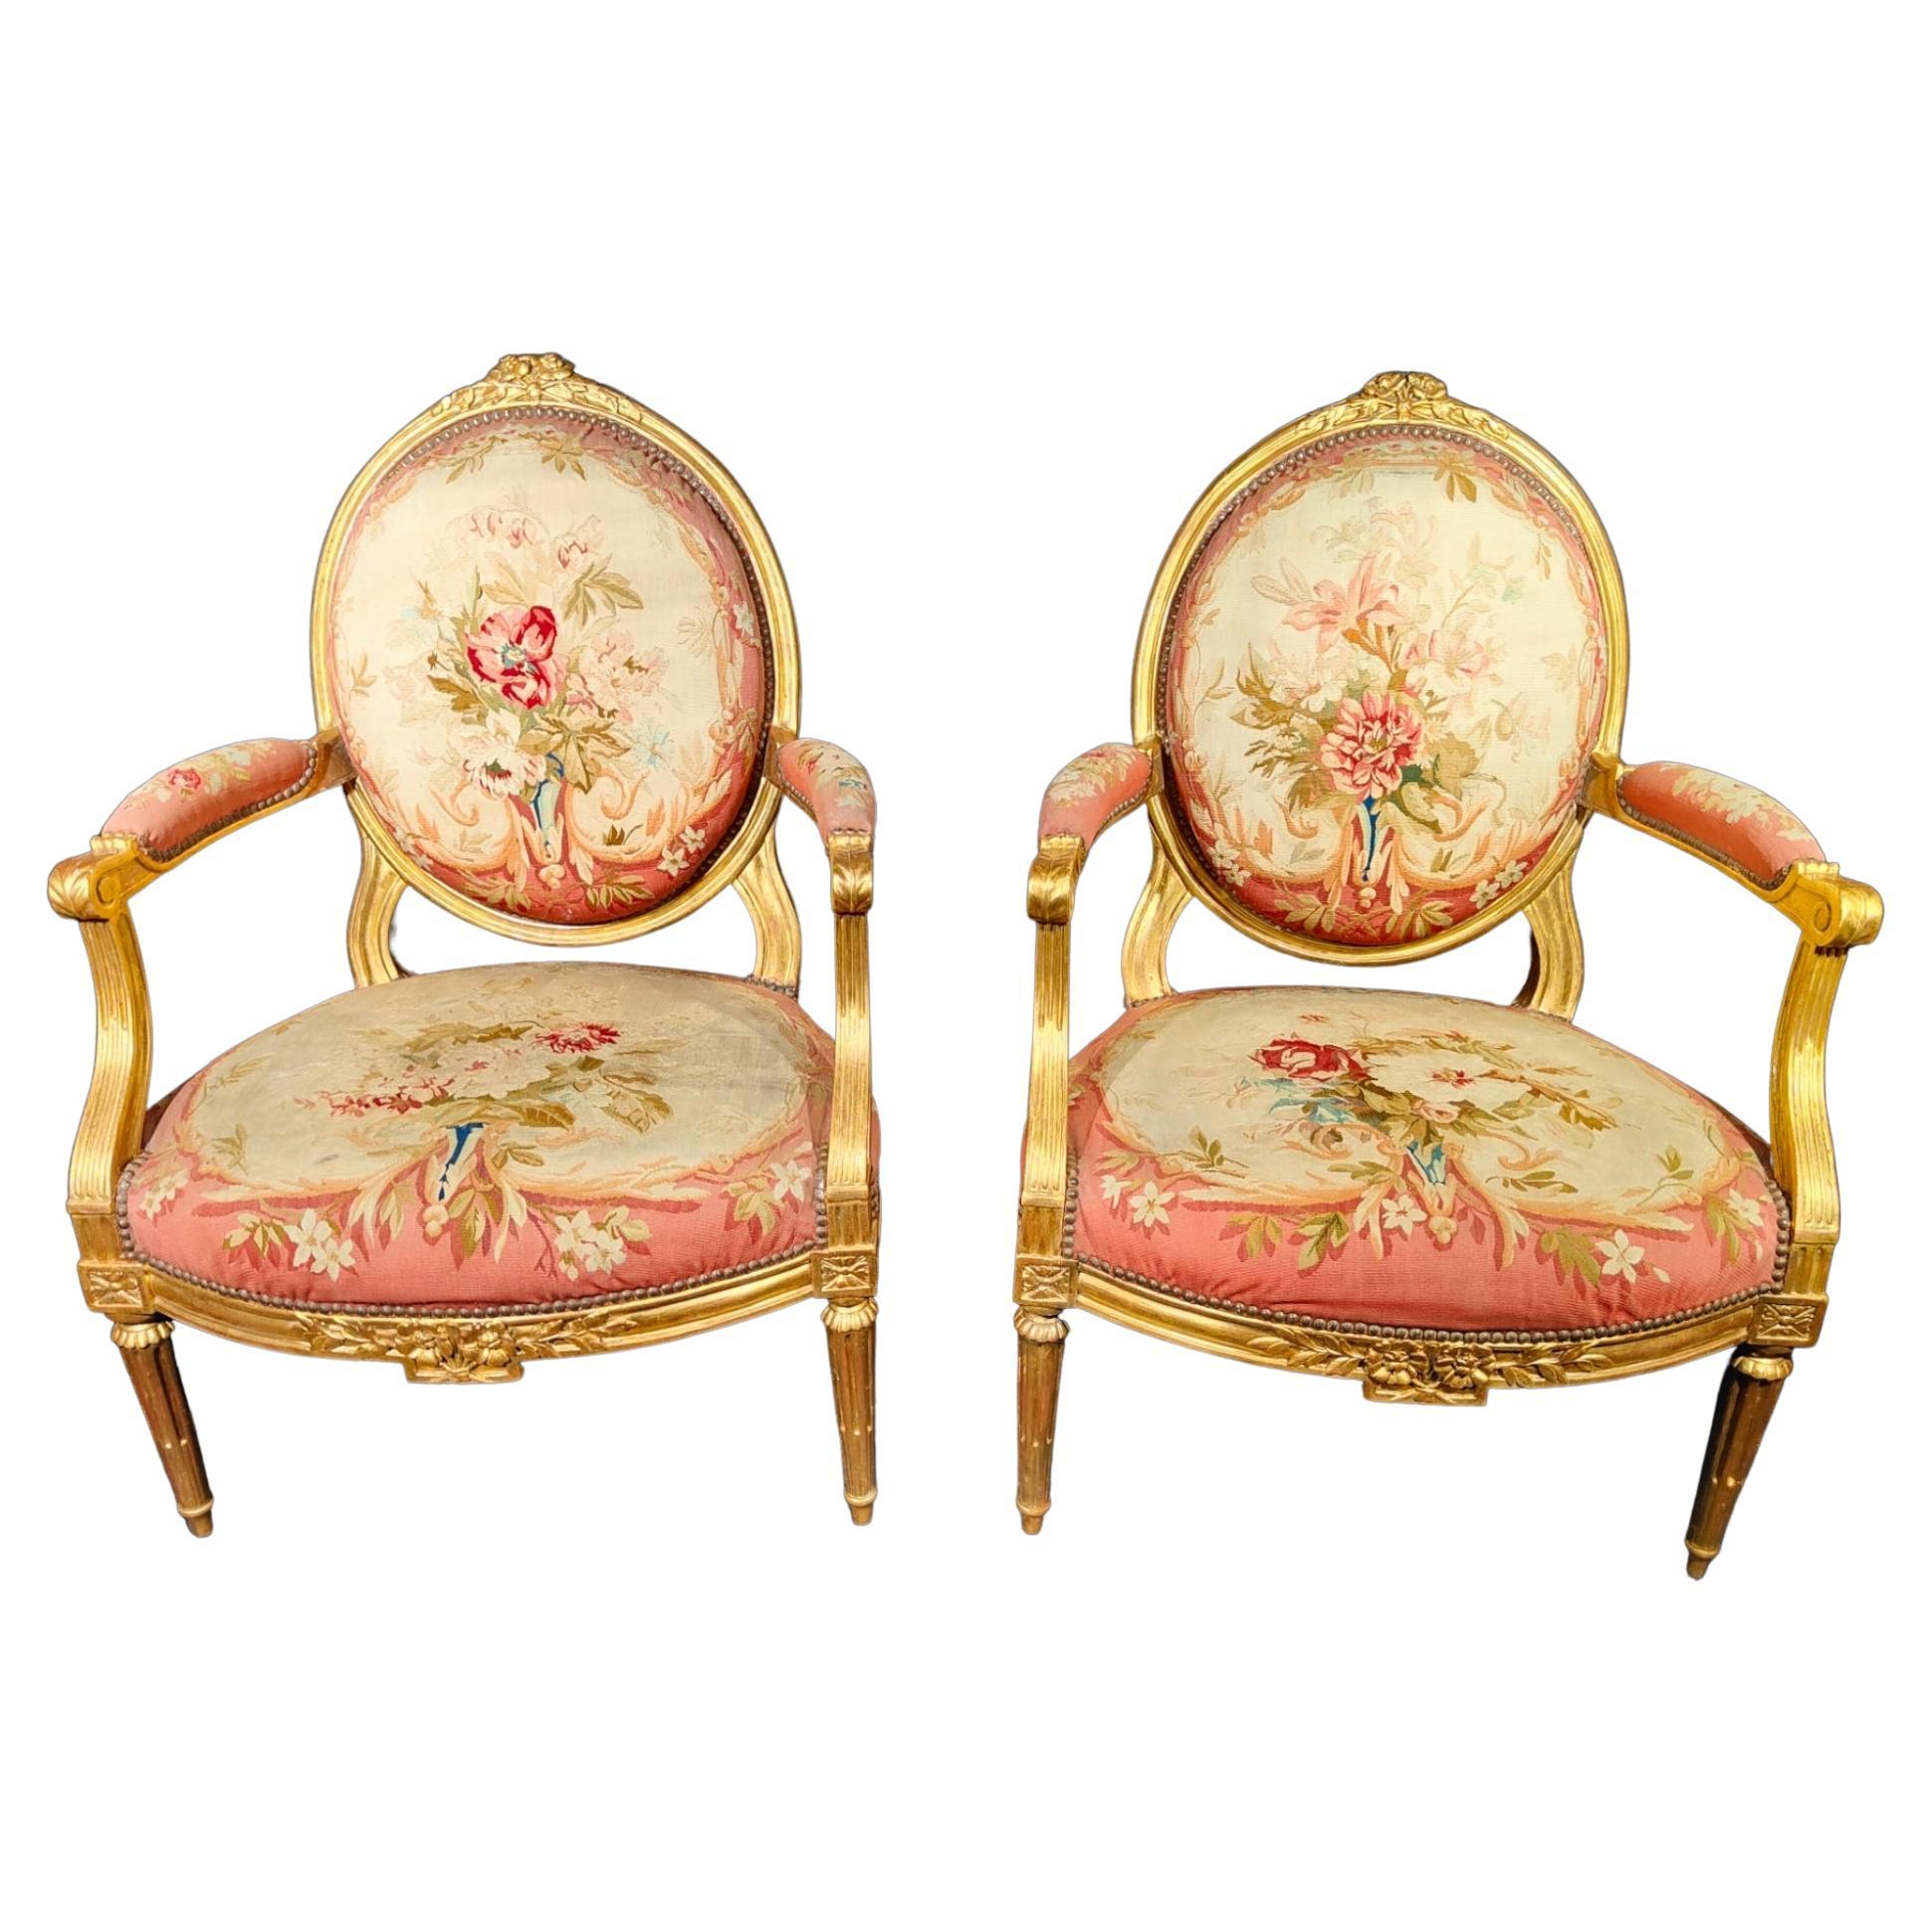 bedeutende französische Stühle aus dem 18. Jahrhundert, signiert von Claude Chevigny